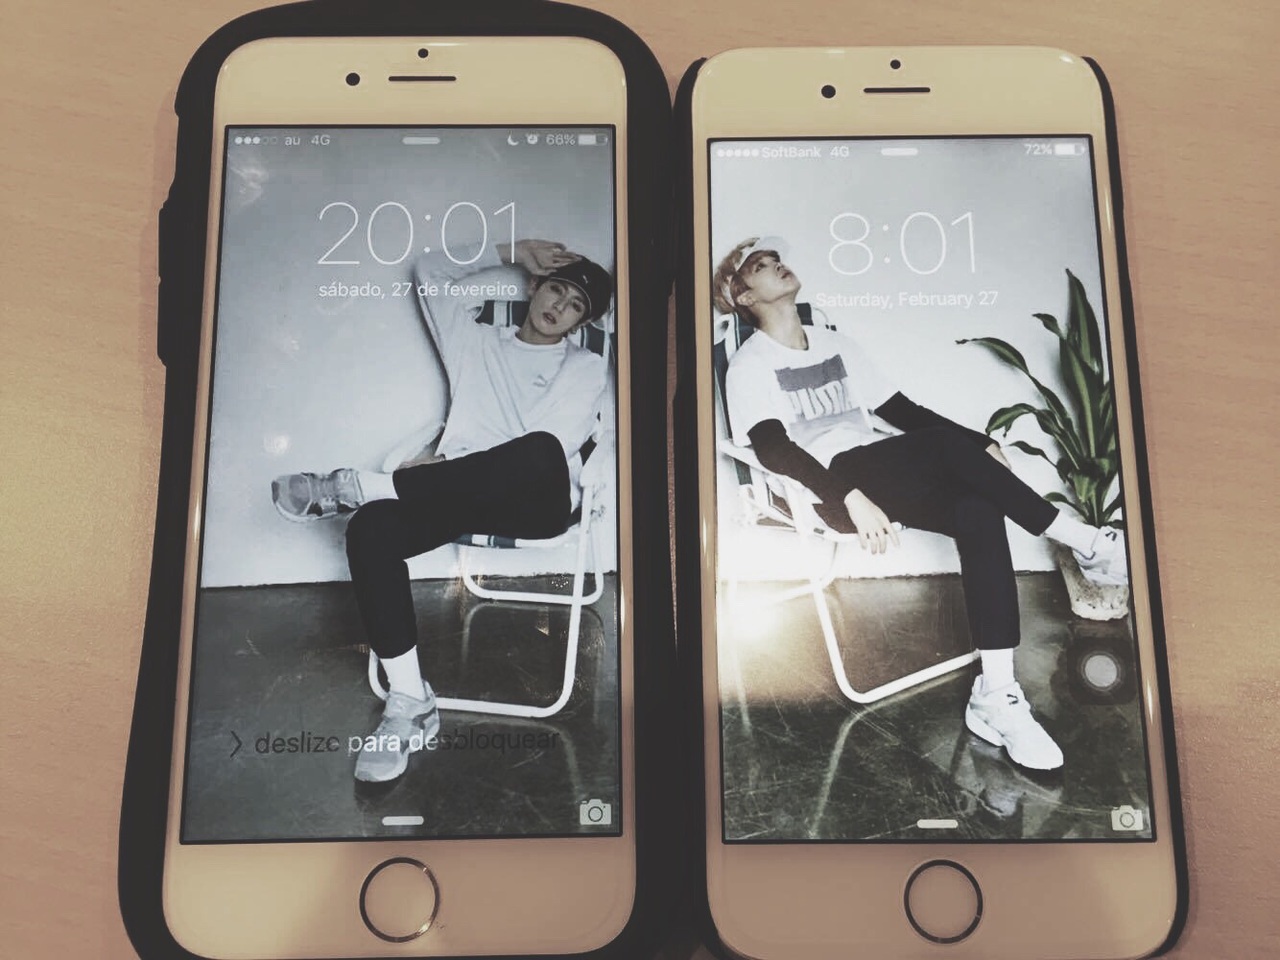 Bts, Grunge, Iphone - Iphone 6 Jungkook Lockscreen - HD Wallpaper 